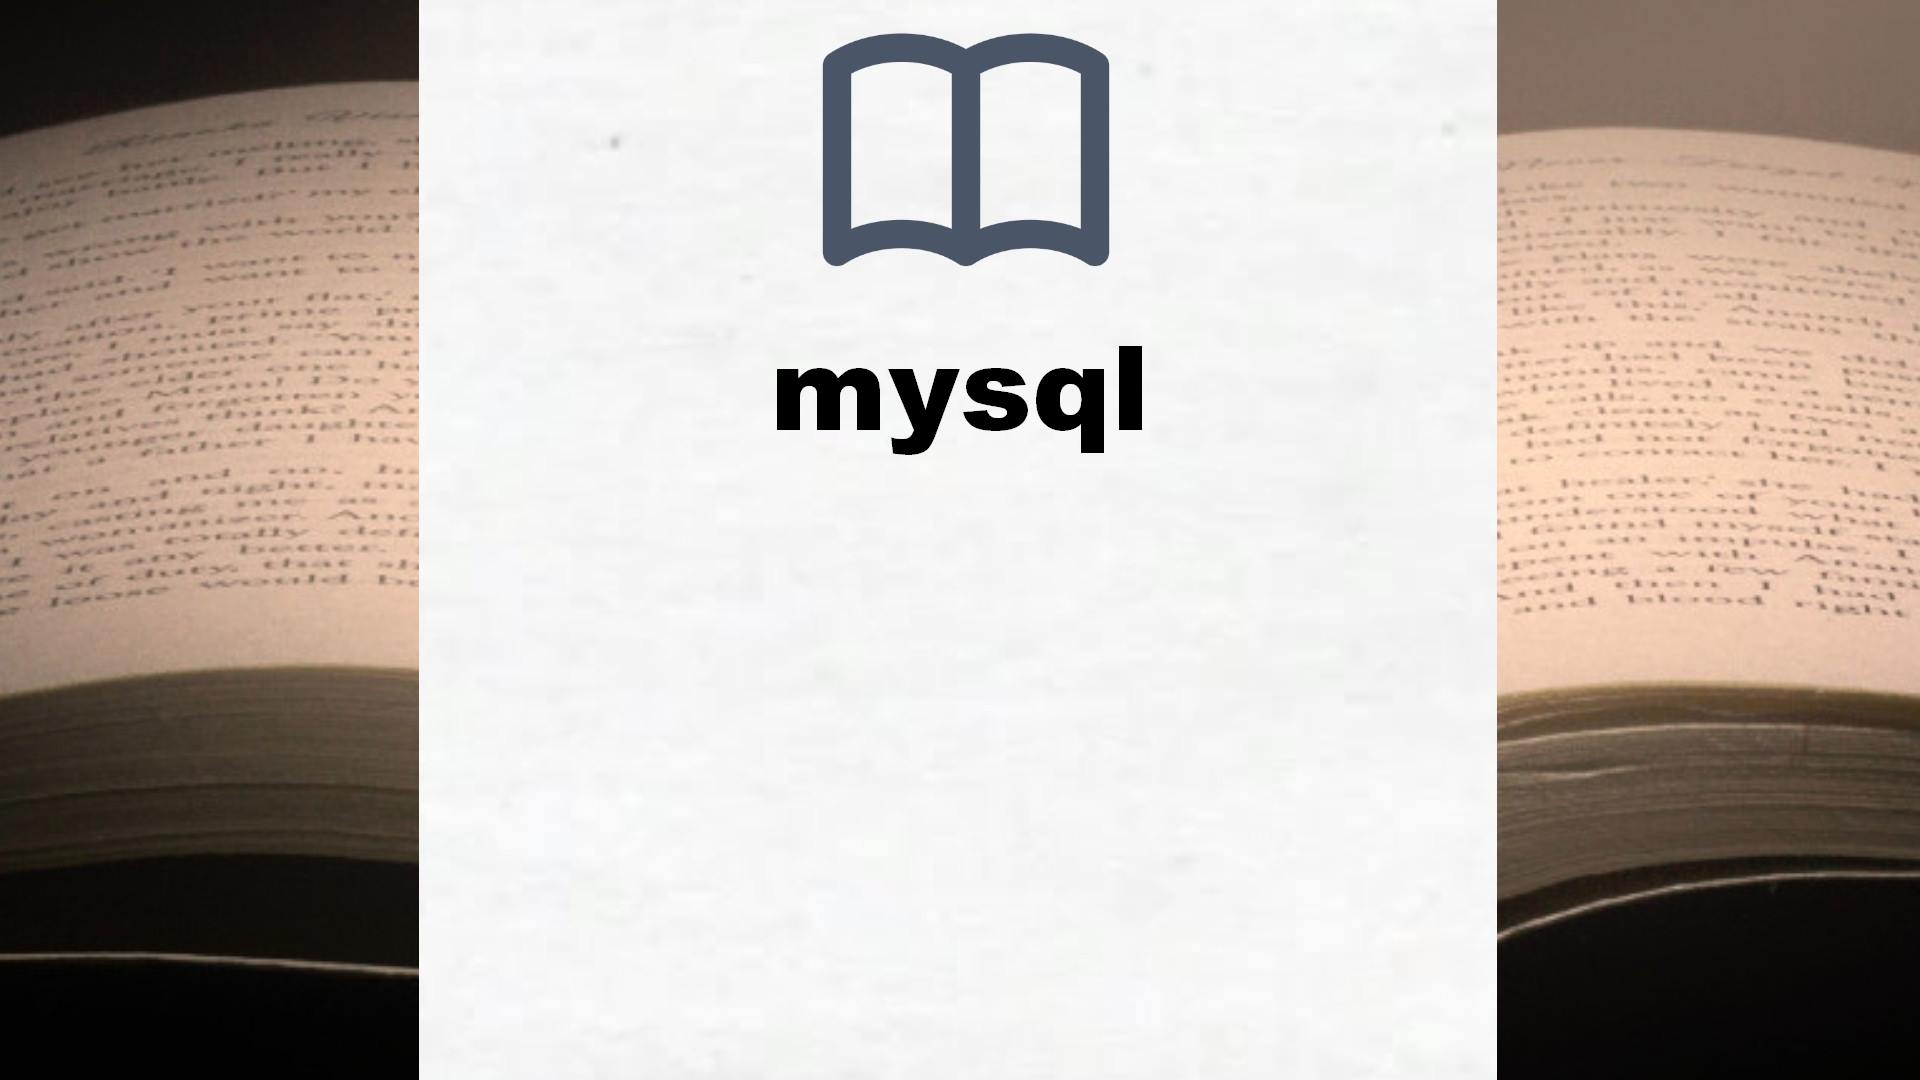 Libros sobre mysql